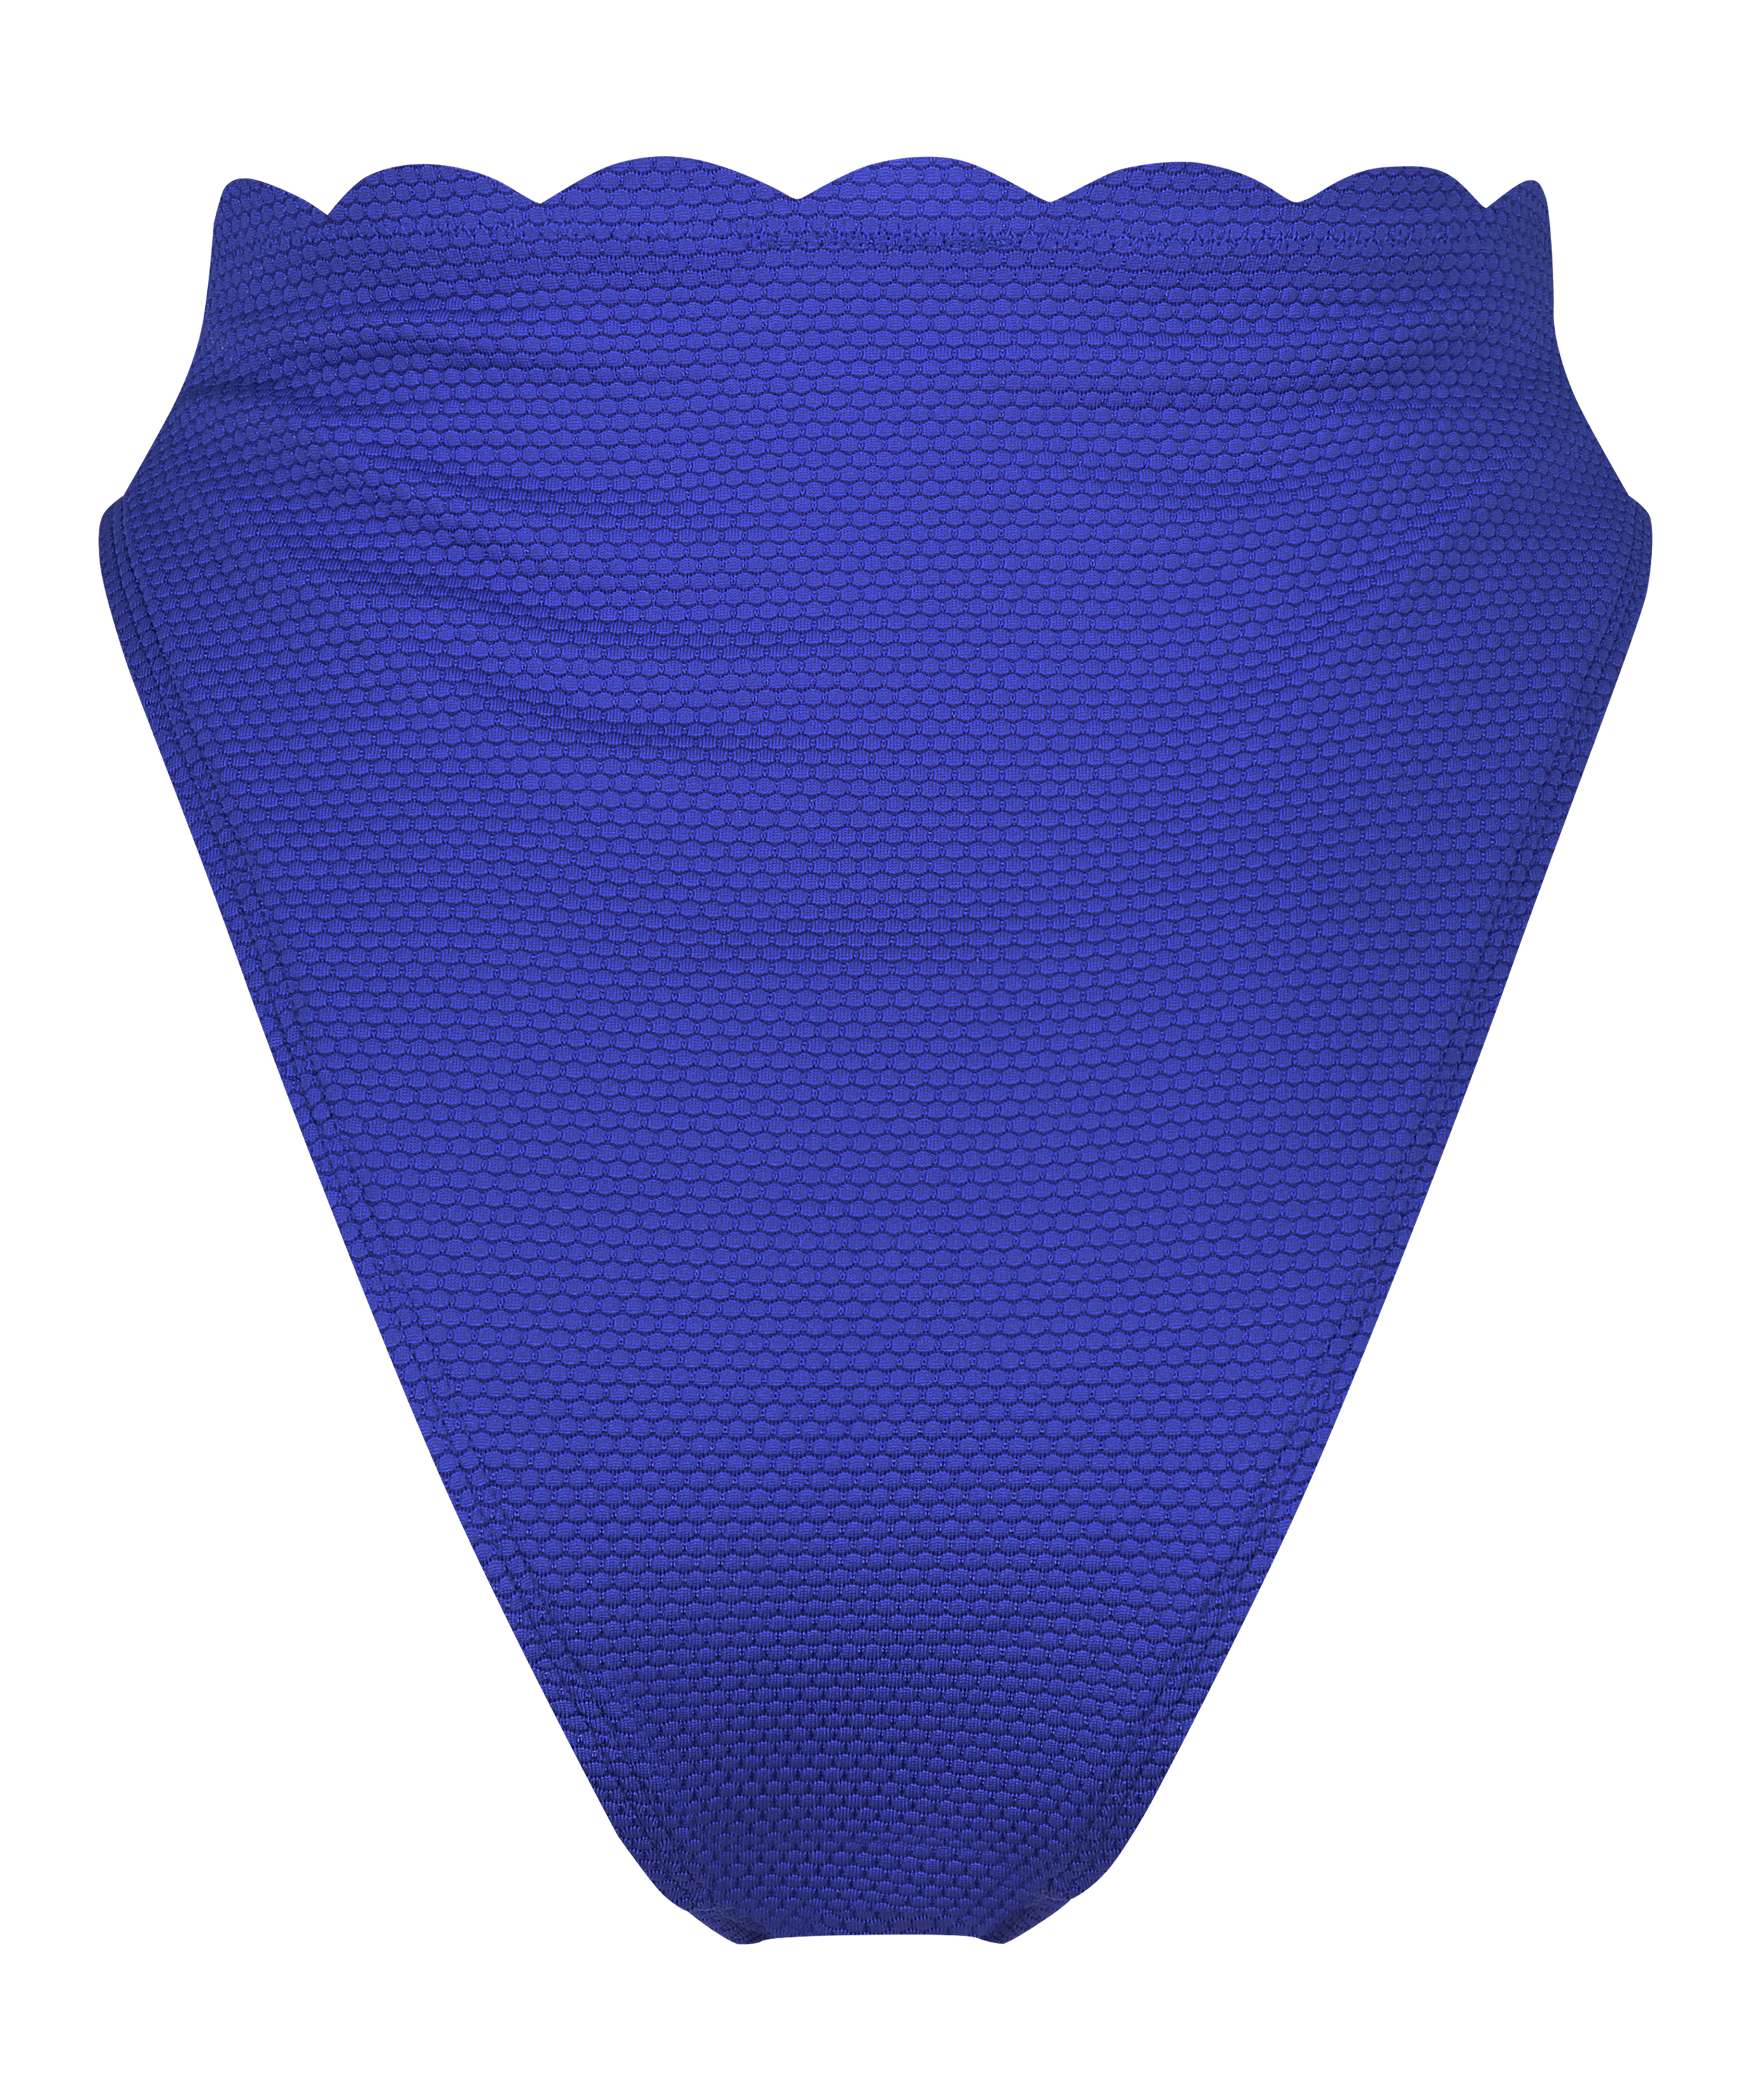 High-cut Scallop bikini bottoms, Blue, main